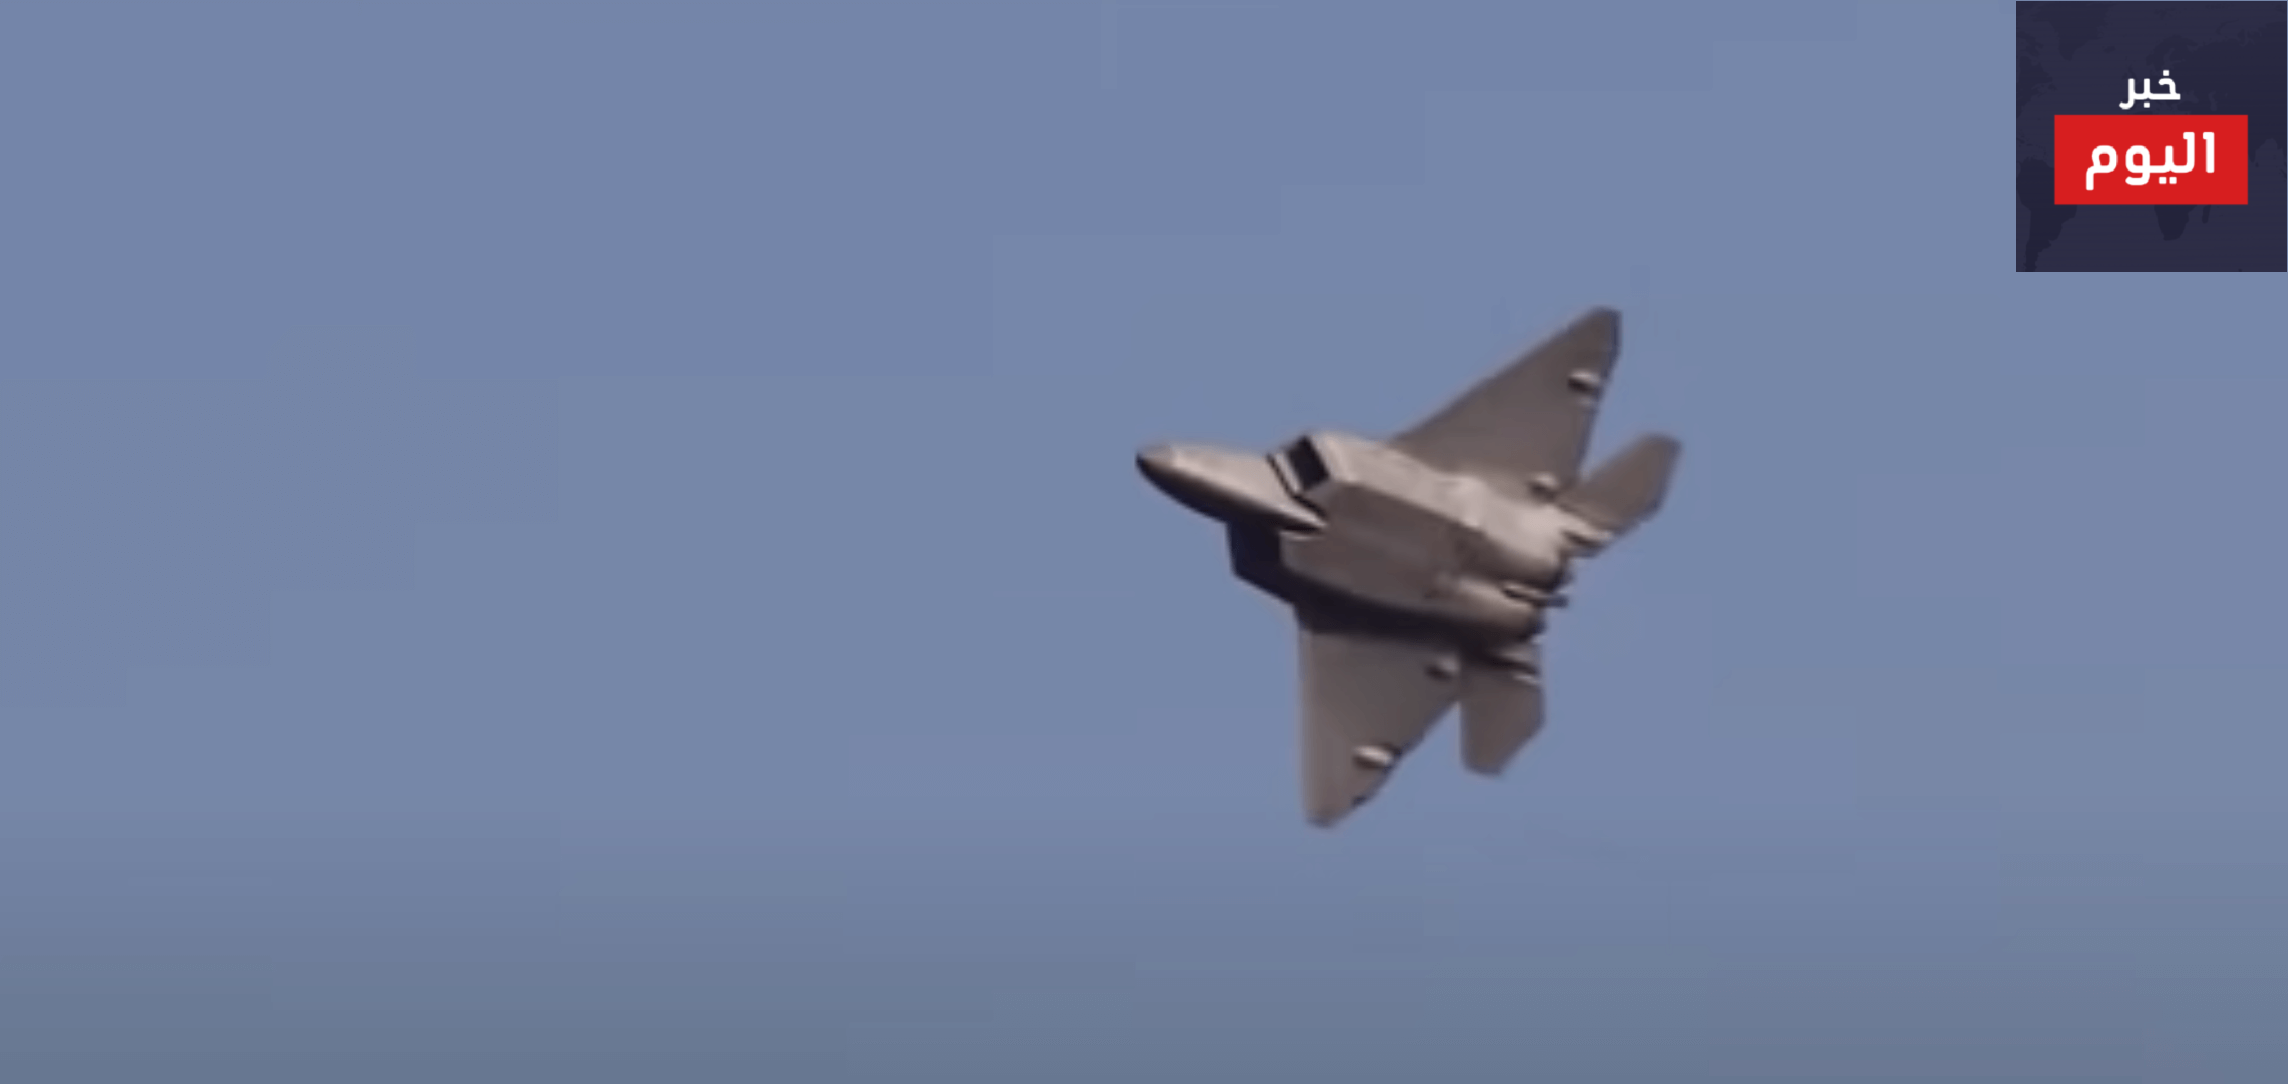 أشهر وأقوى الطائرات الحربية المدمرة في العالم وجنسيتها… فيديو